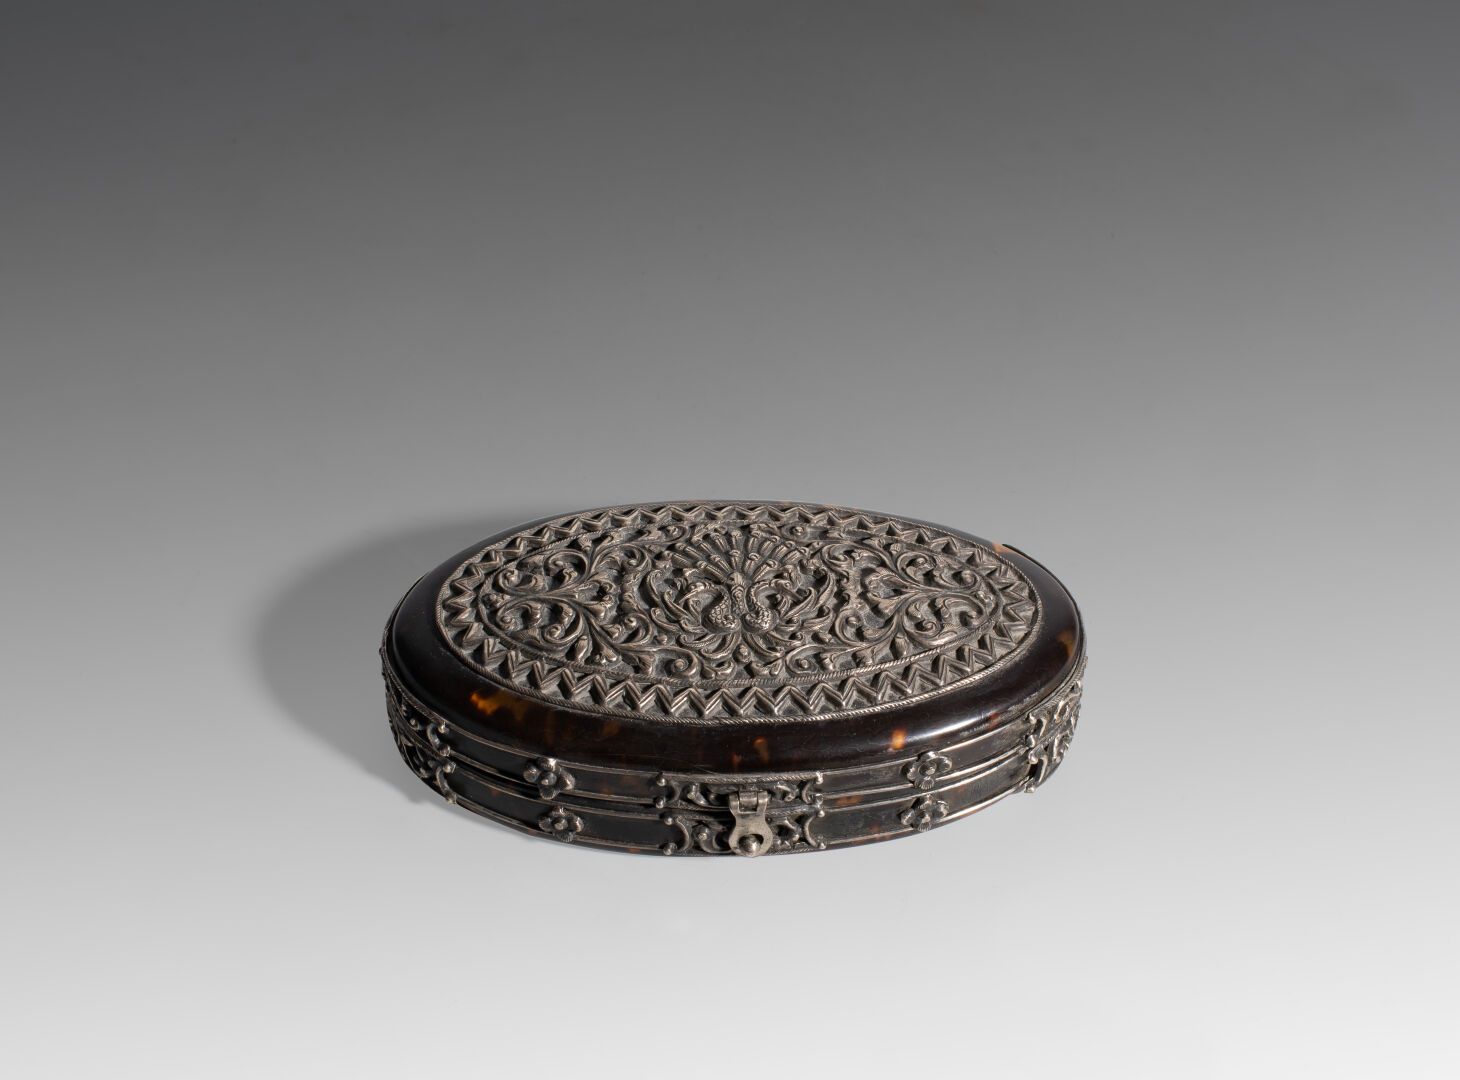 Null Ovale Dose aus Silber und Schildpatt.

19. Jahrhundert 

L: 12 cm

(2530)